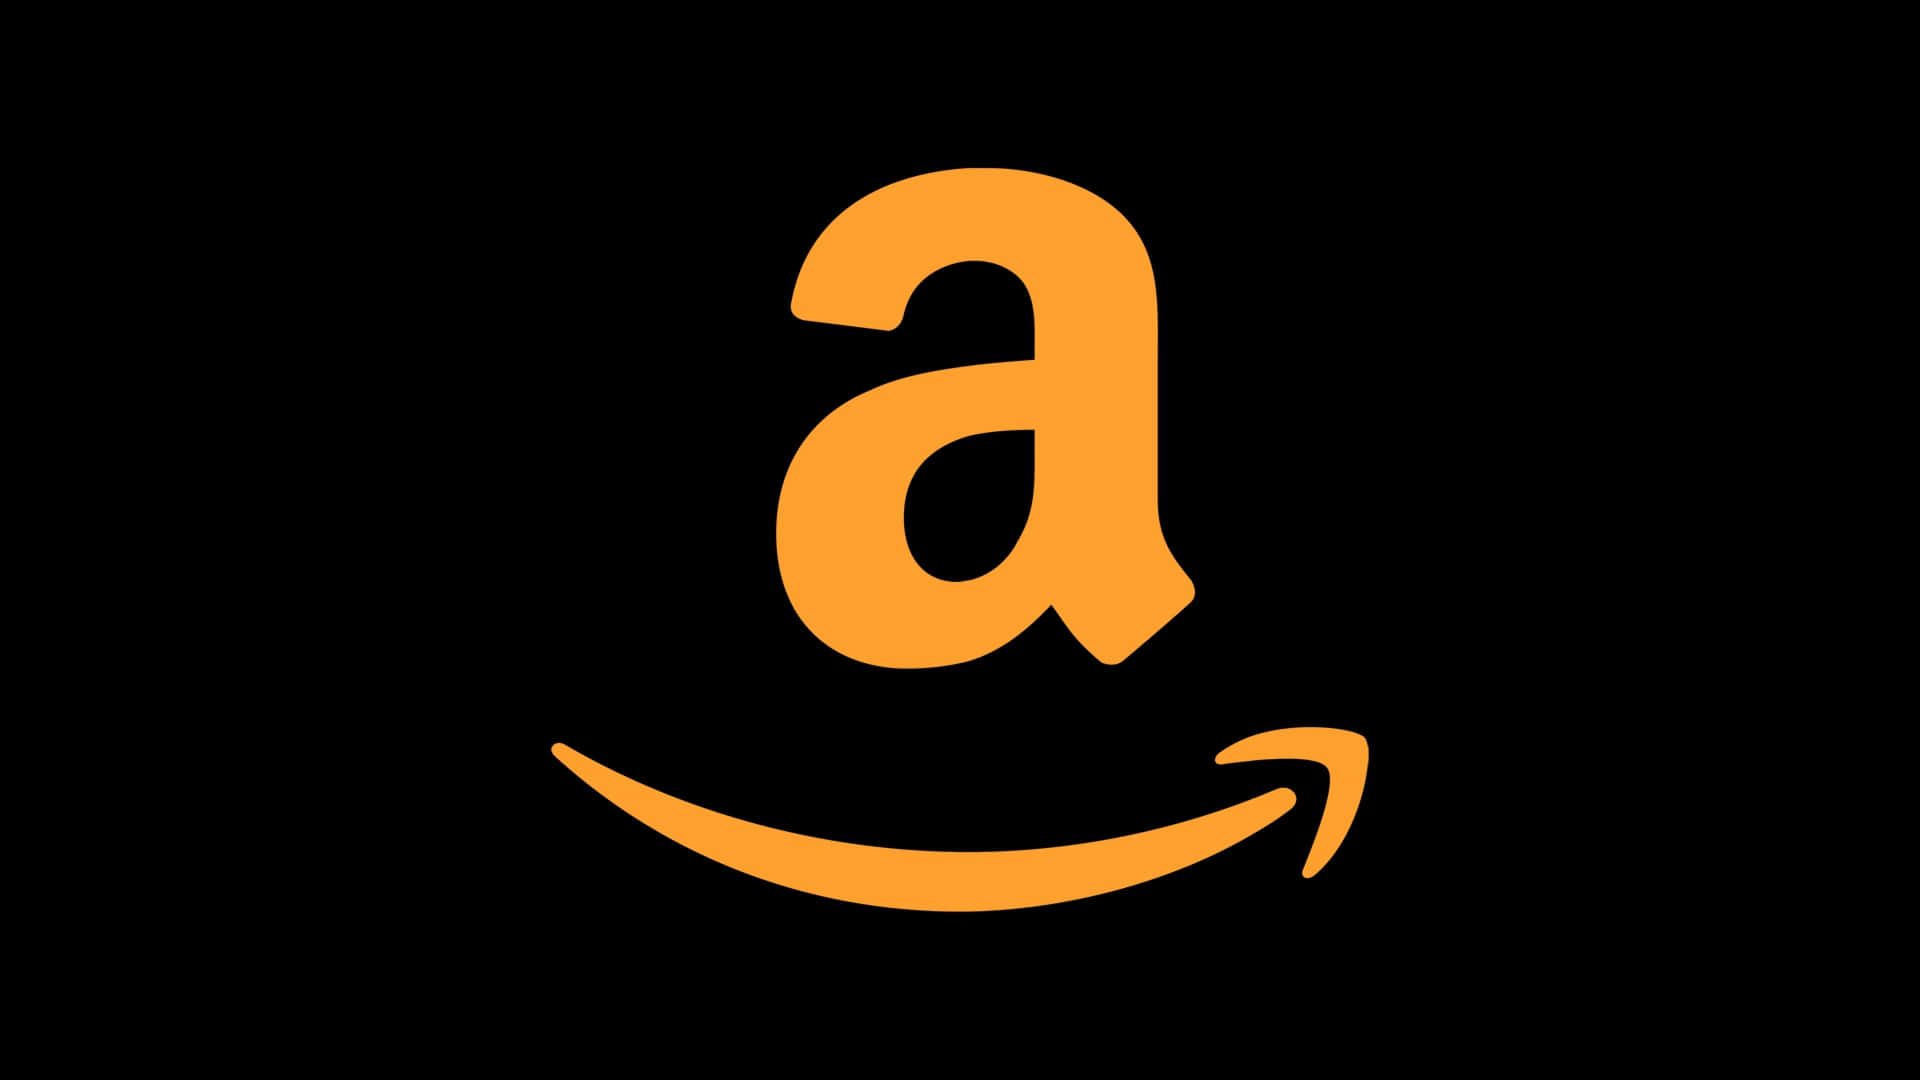 Amazonlogotyp På En Svart Bakgrund